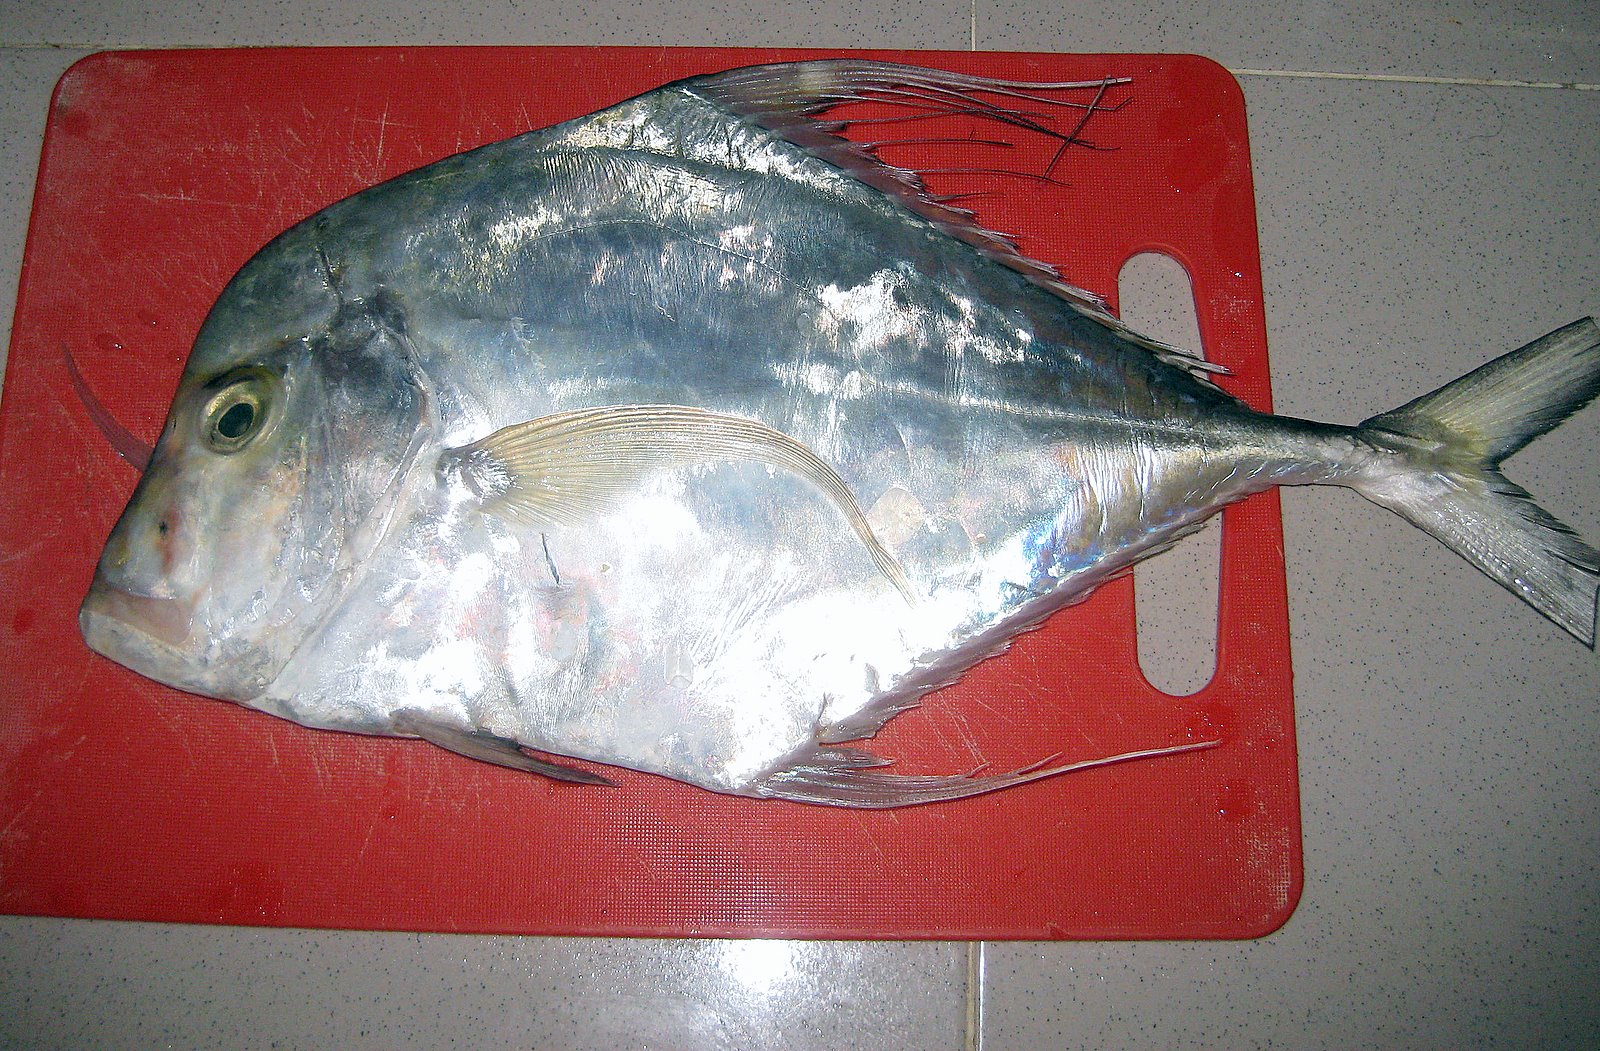 Resepi Ikan Kerapu Sedap - Recipes Pad l